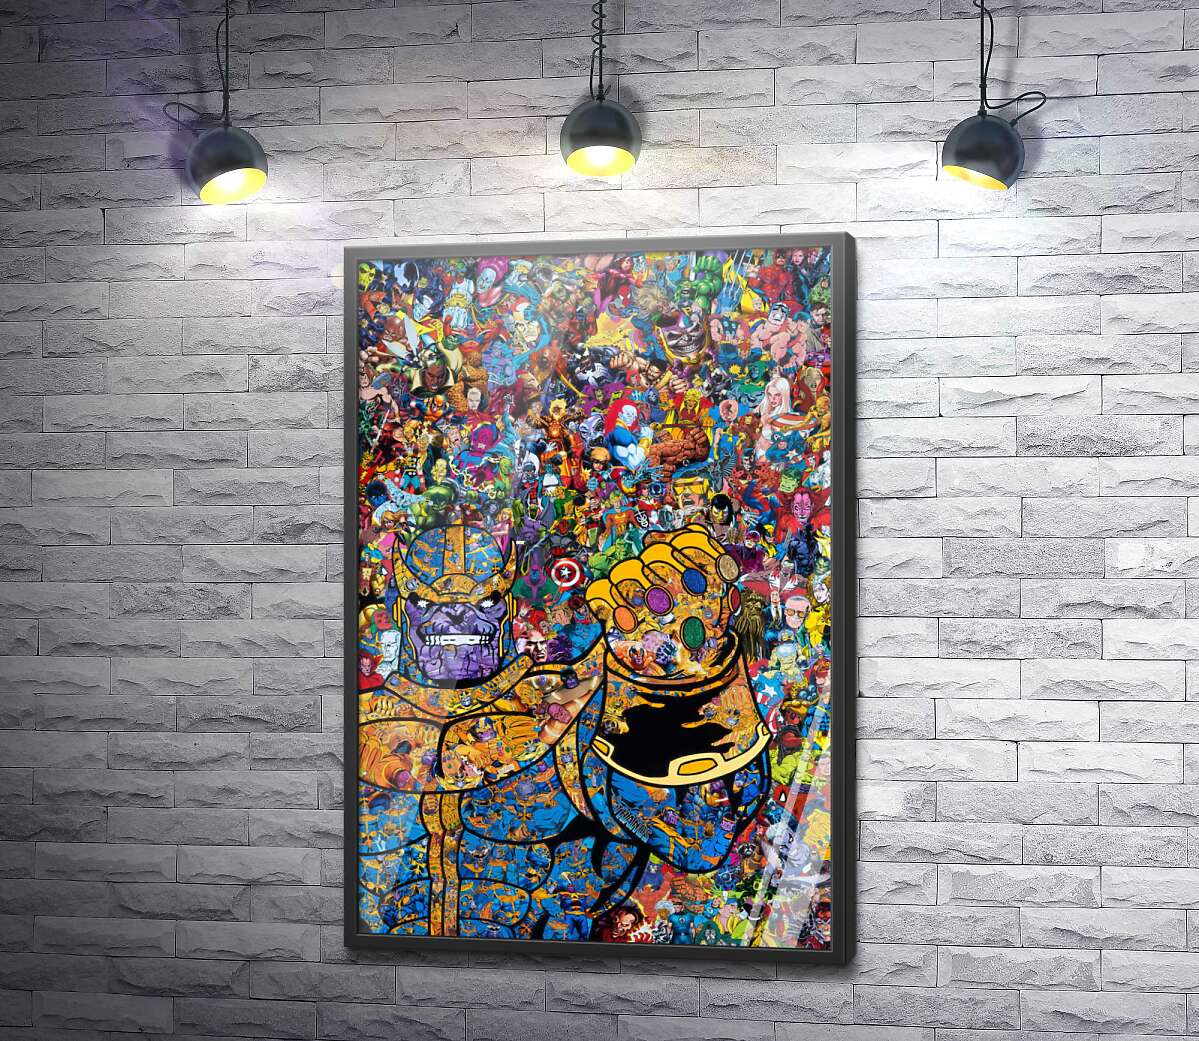 постер Арт коллаж комиксов в стиле Таноса из Марвел